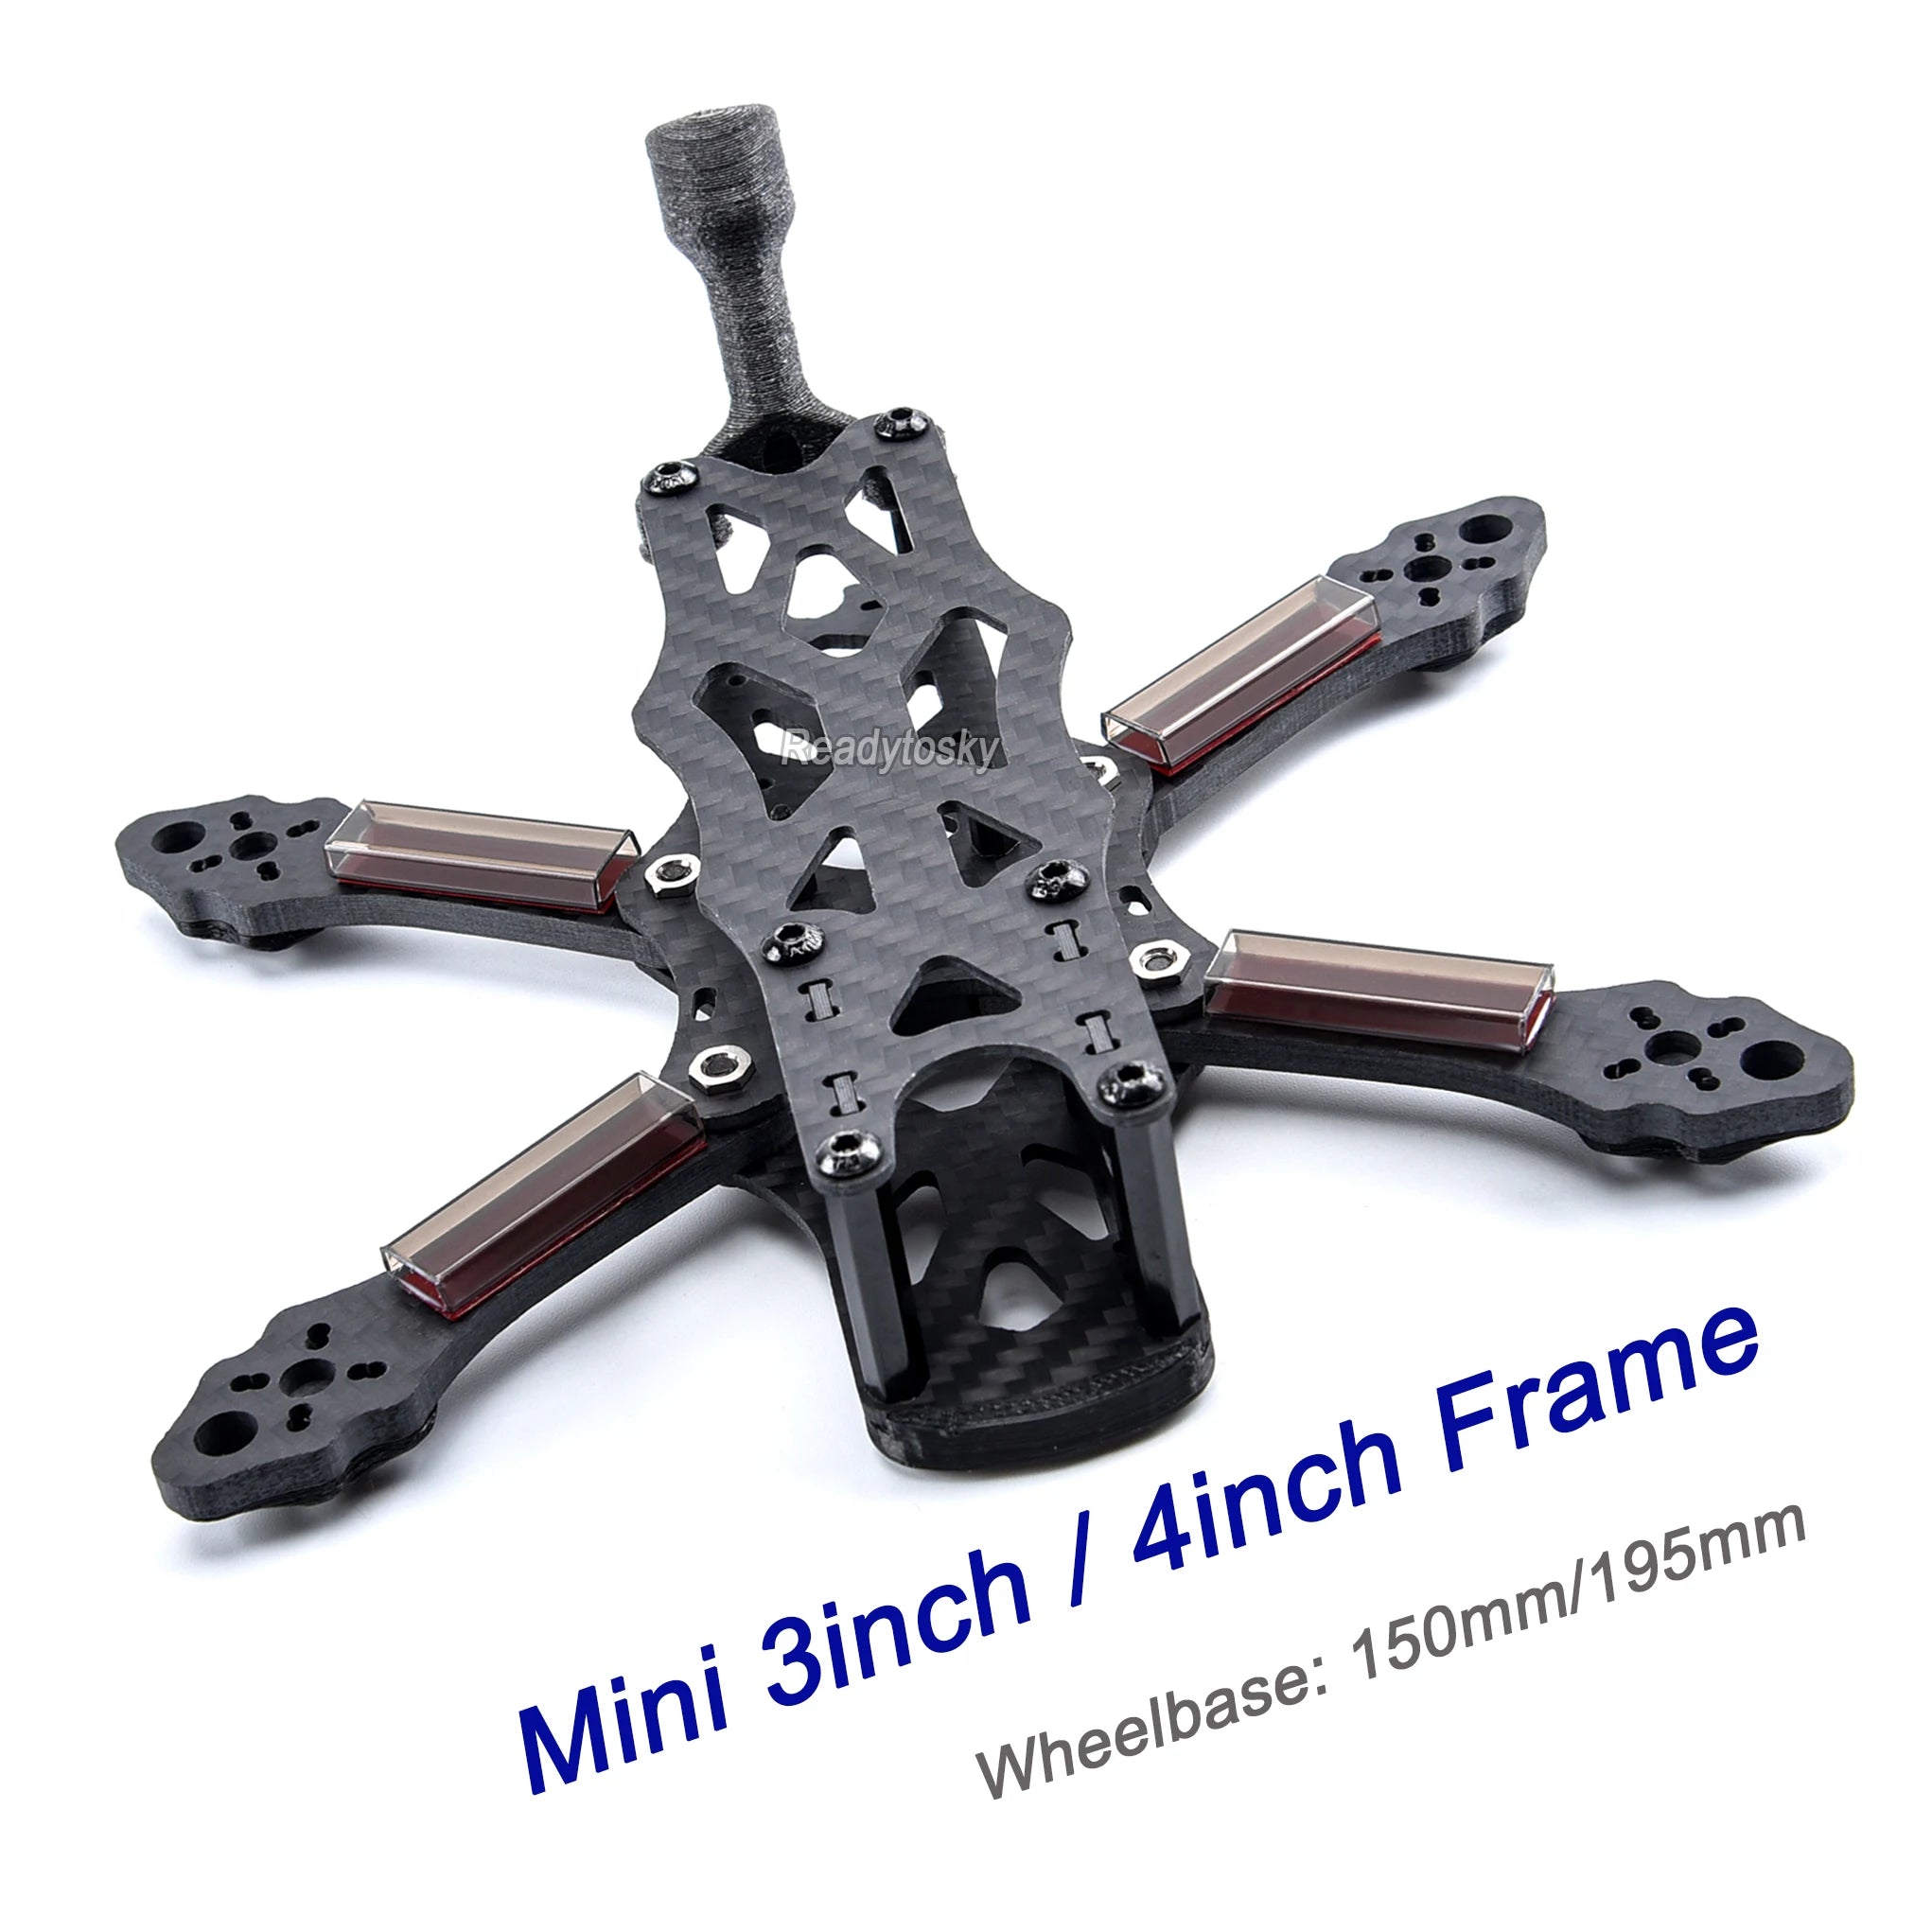 3inch Fiber Frame Kit, Readytosky Frame 4inch 150mm/195mm 3inch Mini Wheelbase